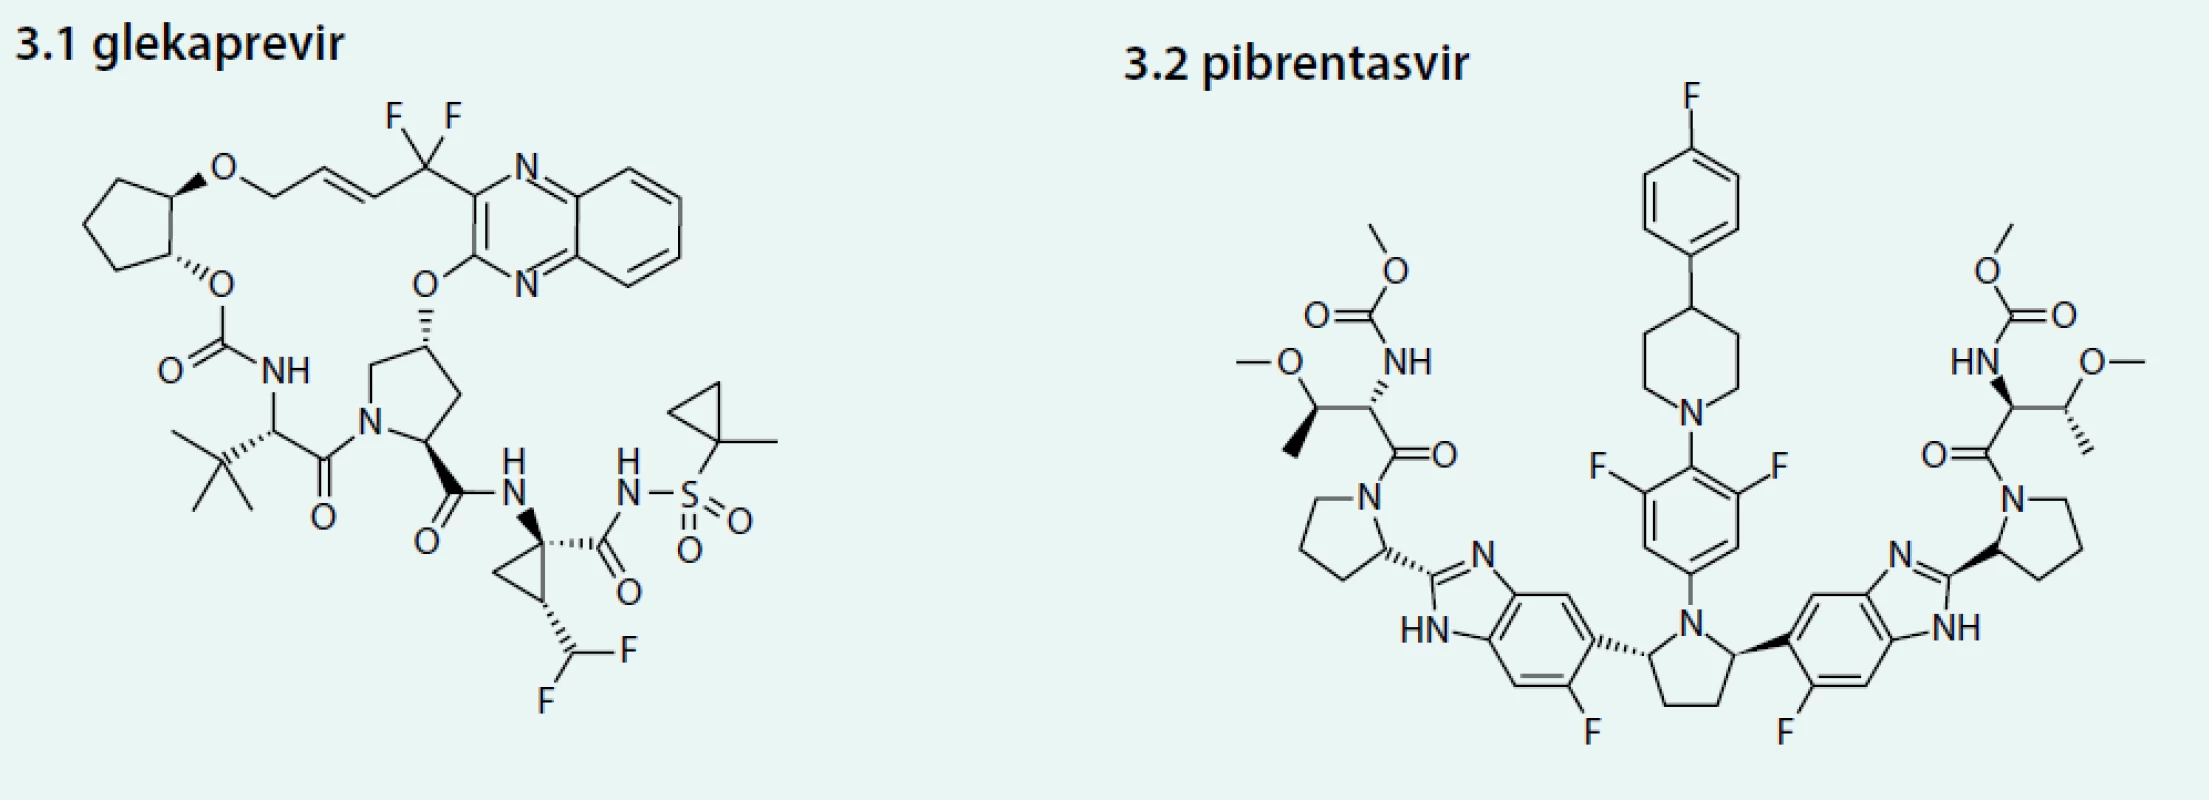 Strukturální vzorce glekapreviru (3.1) a pibrentasviru (3.2)